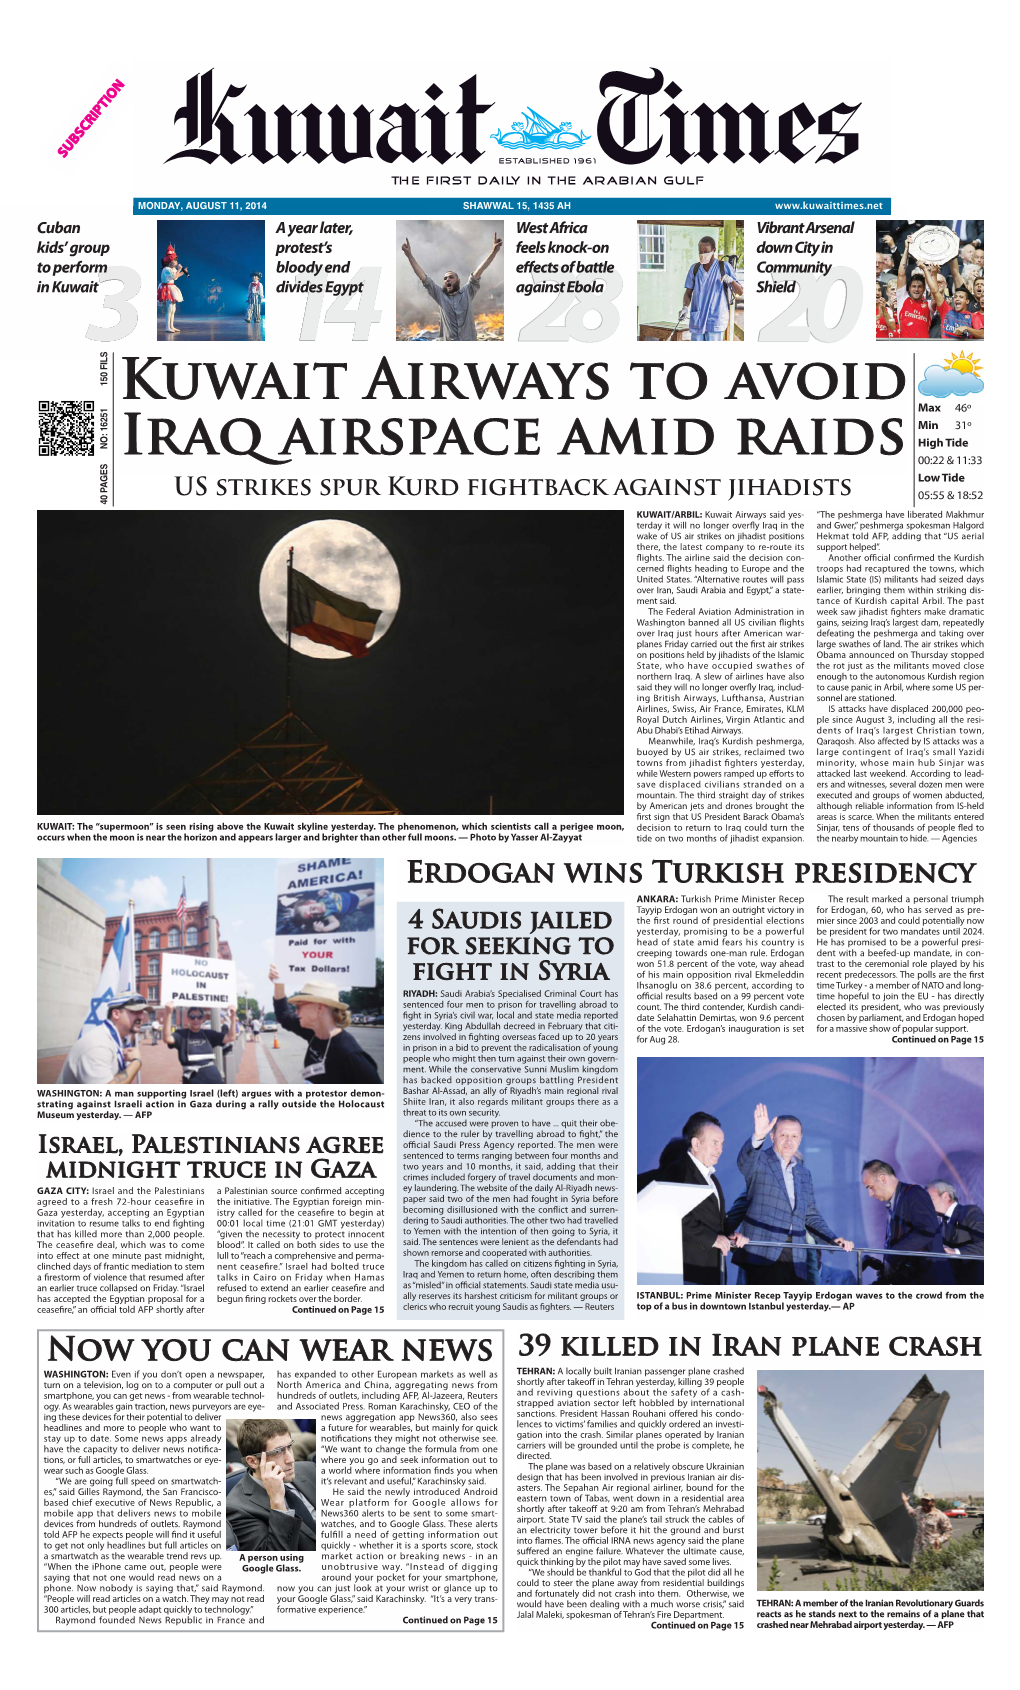 Kuwait Airways to Avoid Iraq Airspace Amid Raids